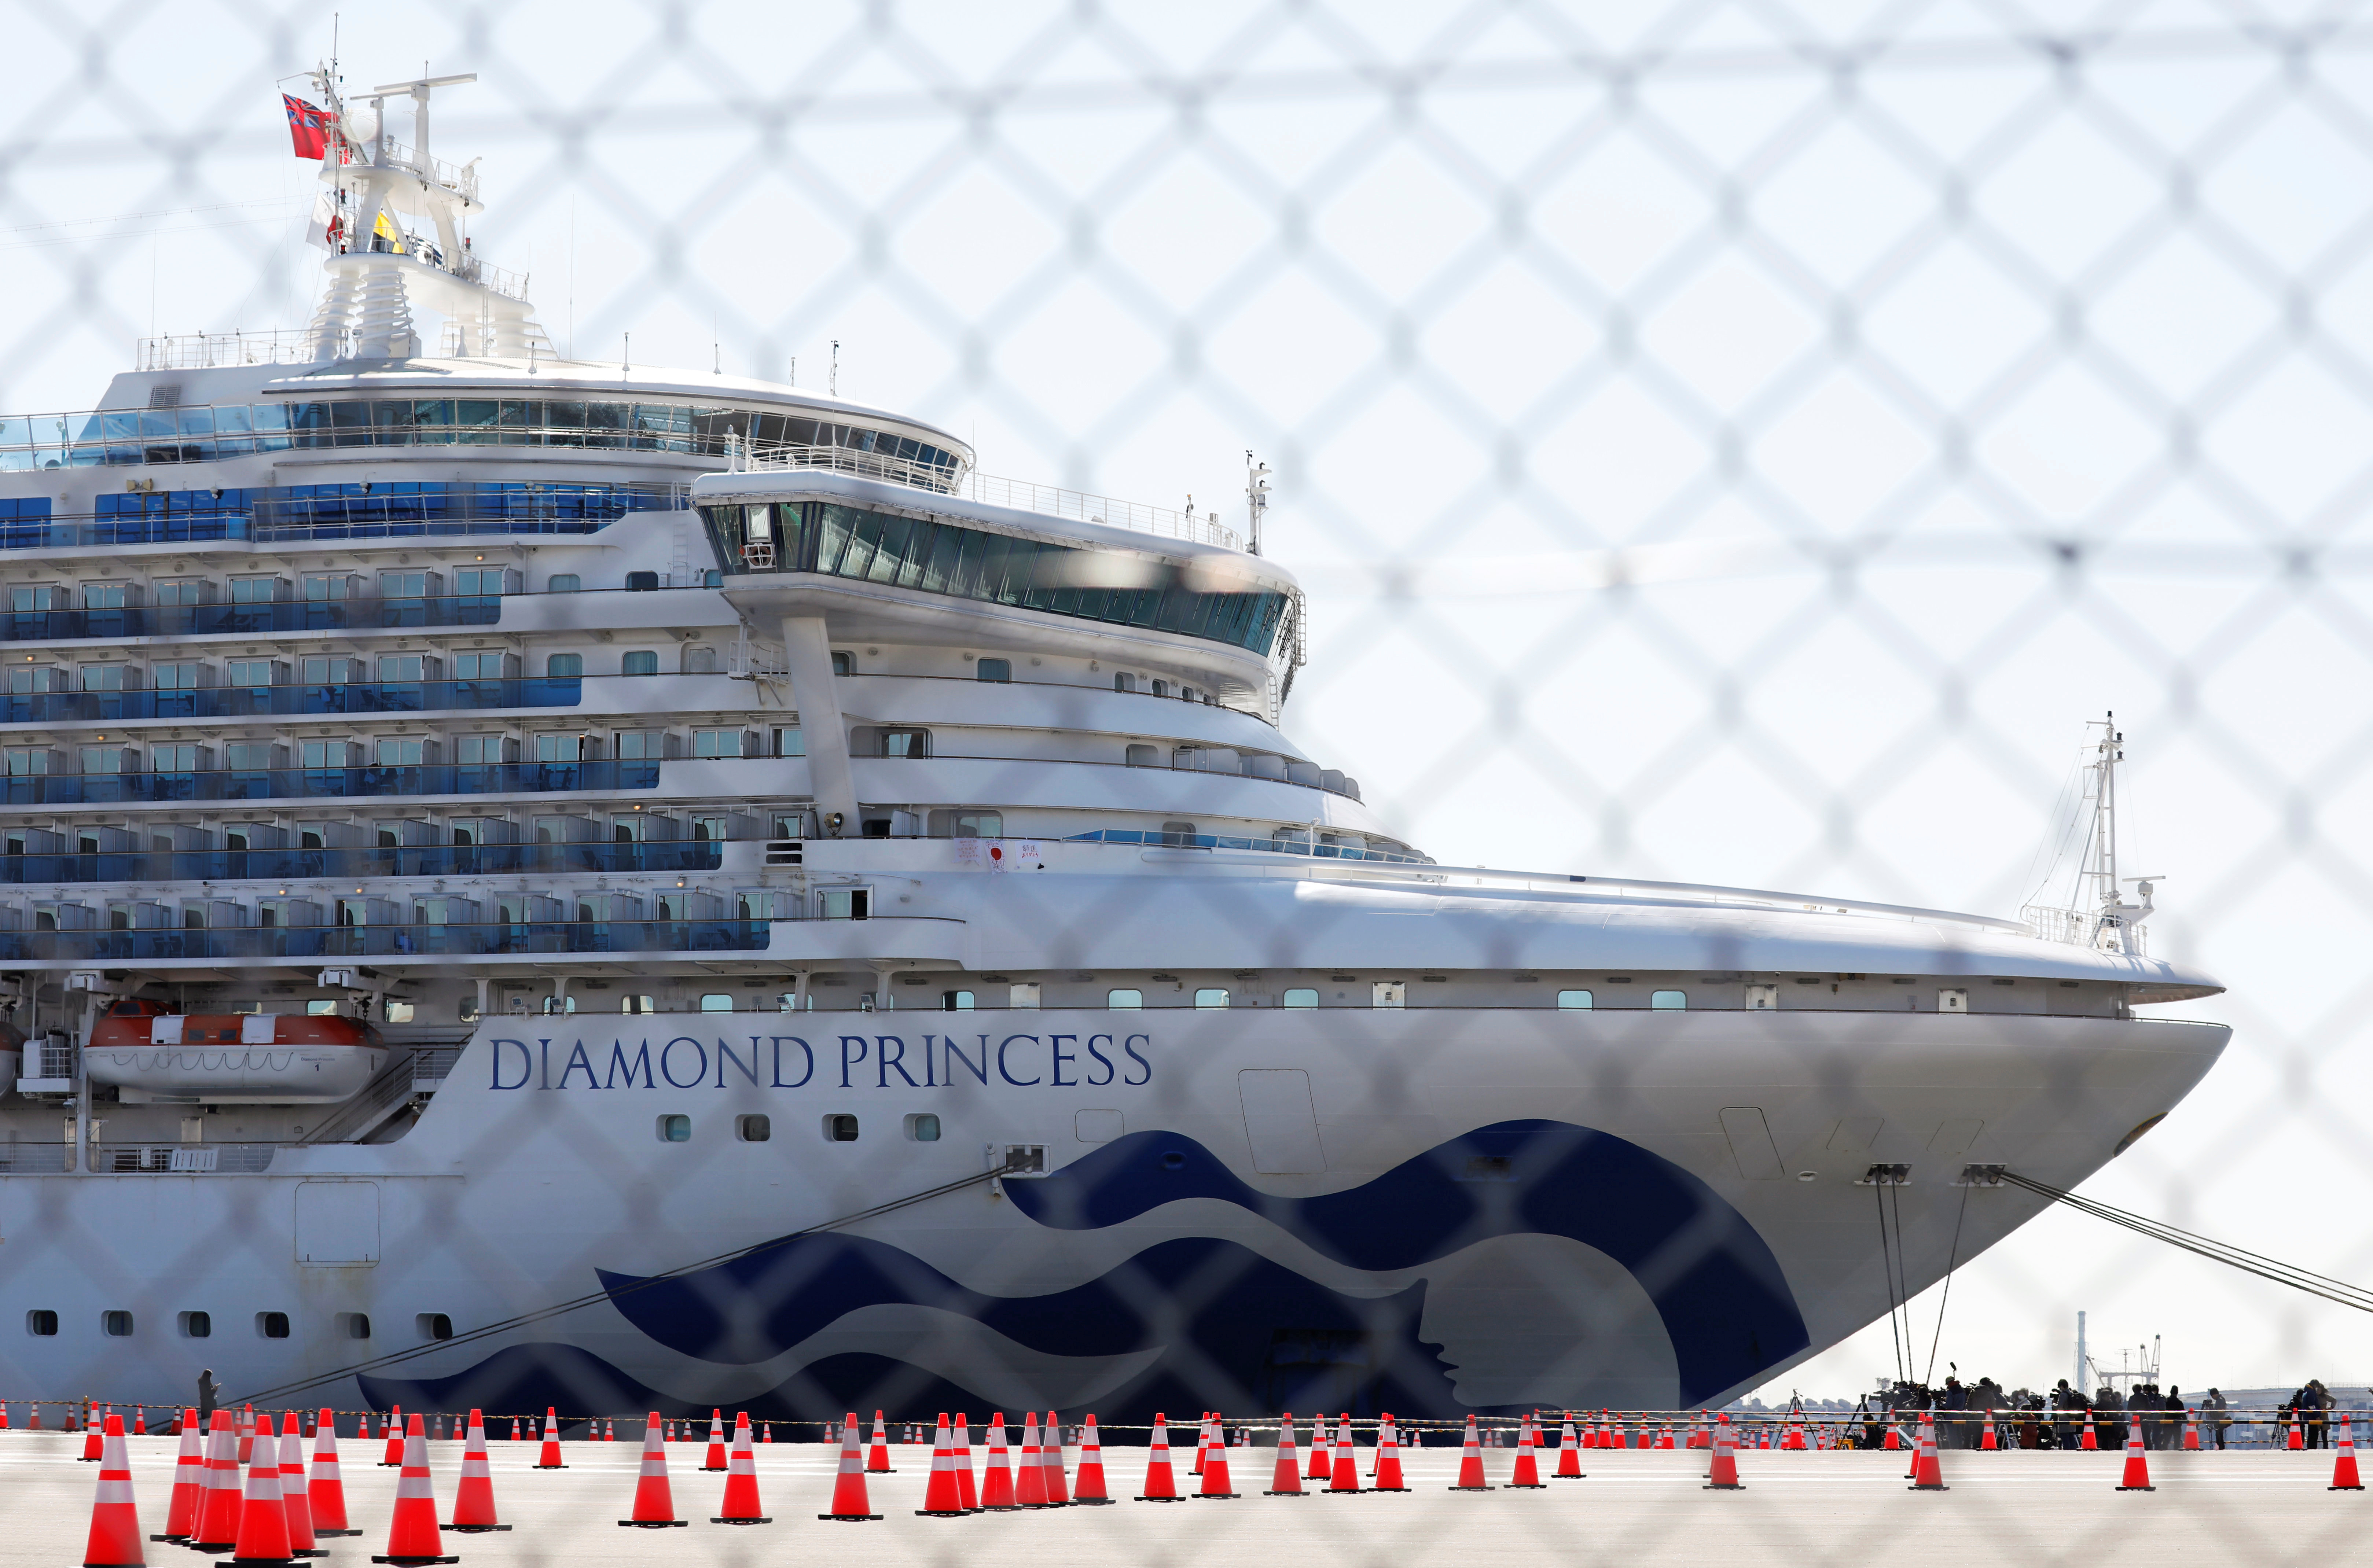 Japón dejará que pasajeros mayores abandonen el Diamond Princess afectado por coronavirus (Fotos)